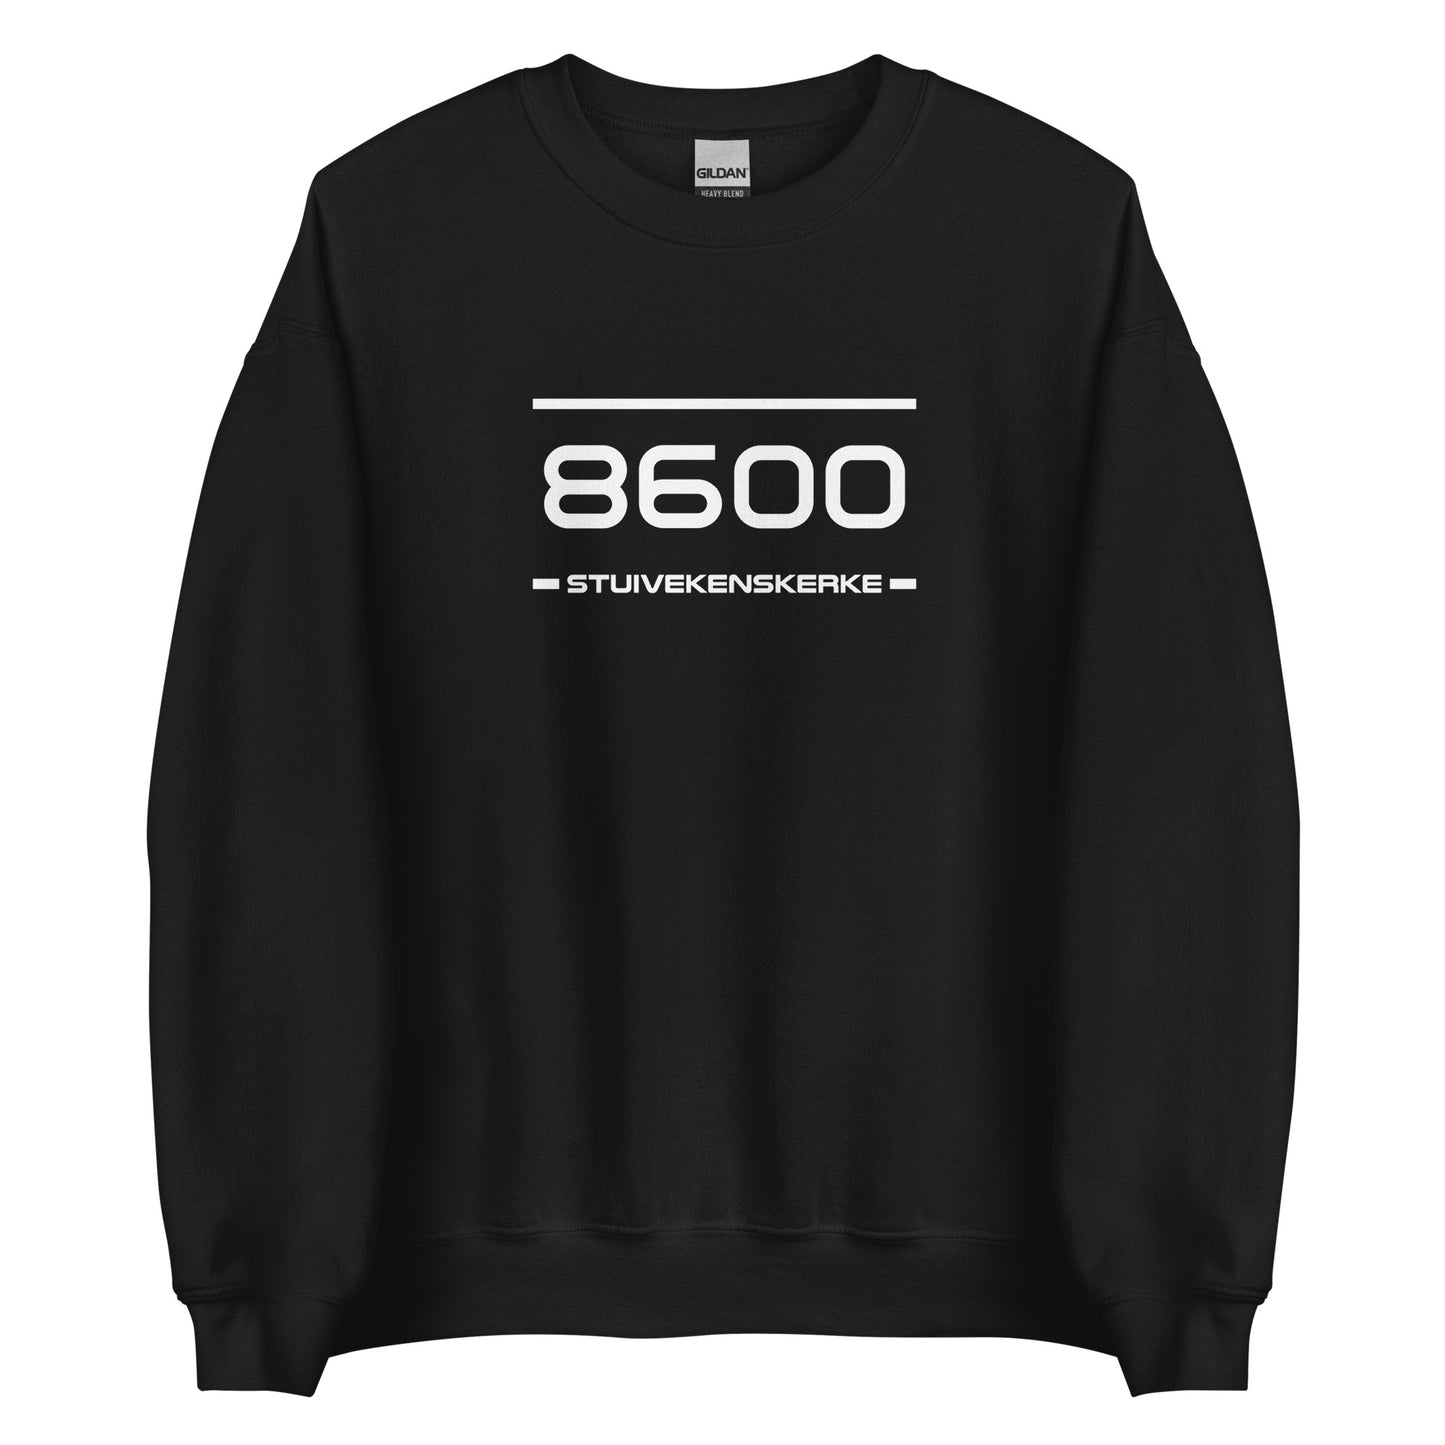 Sweater - 8600 - Stuivekenskerke (M/V)